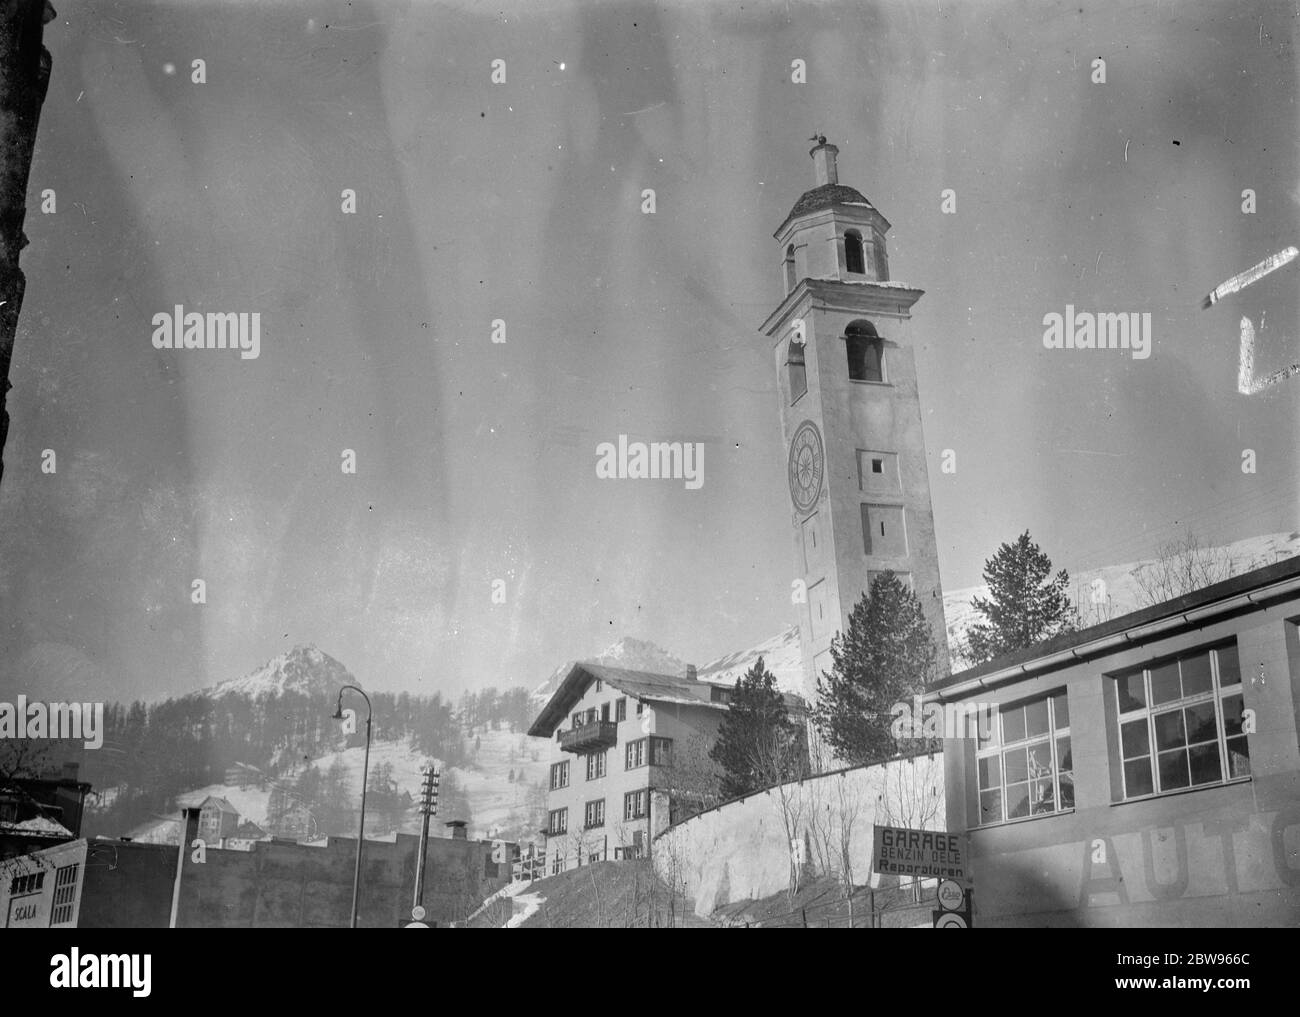 St Moritz berühmten schlanken Turm . Der berühmte schiefe Turm von St. Moritz , Schweiz , das älteste Gebäude in der Stadt, die aus dem Jahr 1570 stammt . Februar 1932 Stockfoto